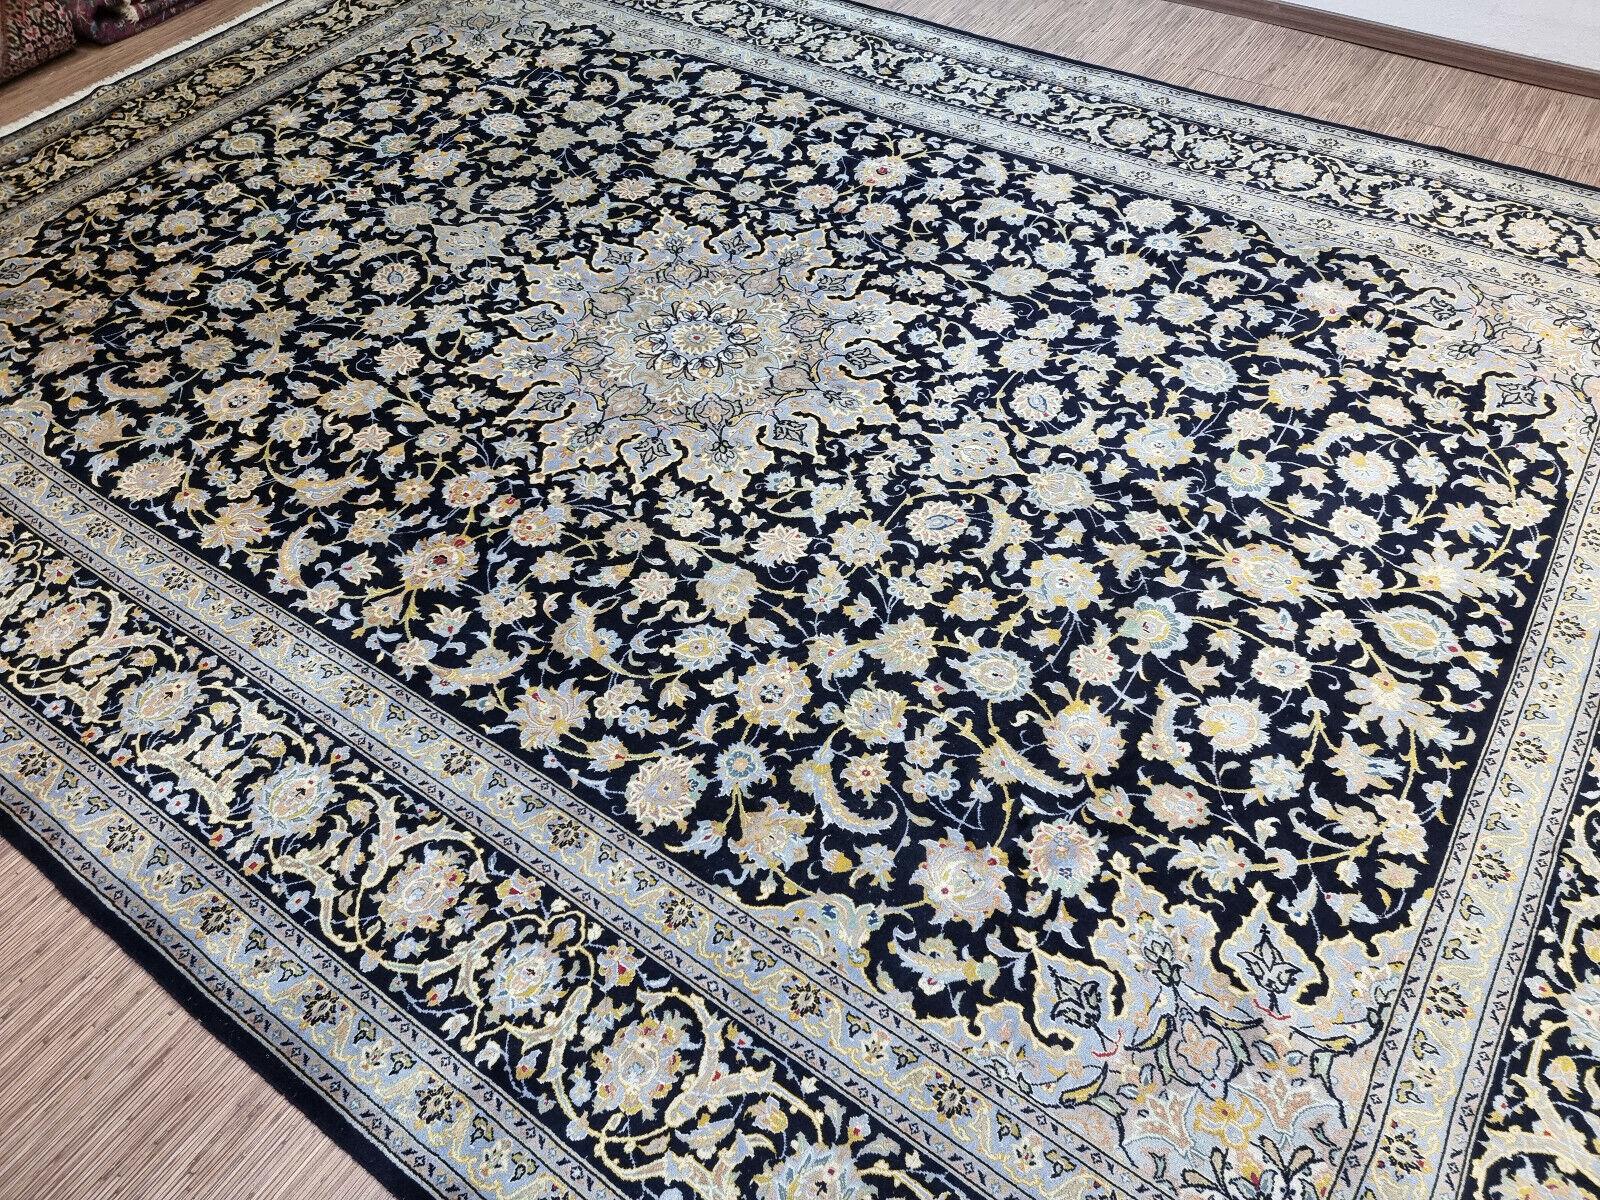 Verwandeln Sie Ihren Raum mit diesem handgefertigten Kashan-Teppich im persischen Vintage-Stil in Übergröße. Dieser prächtige Teppich misst geräumige 10,1' x 14,4' (310cm x 440cm) und ist damit ideal für große ROOMS und Bereiche.

Farbpalette: Der